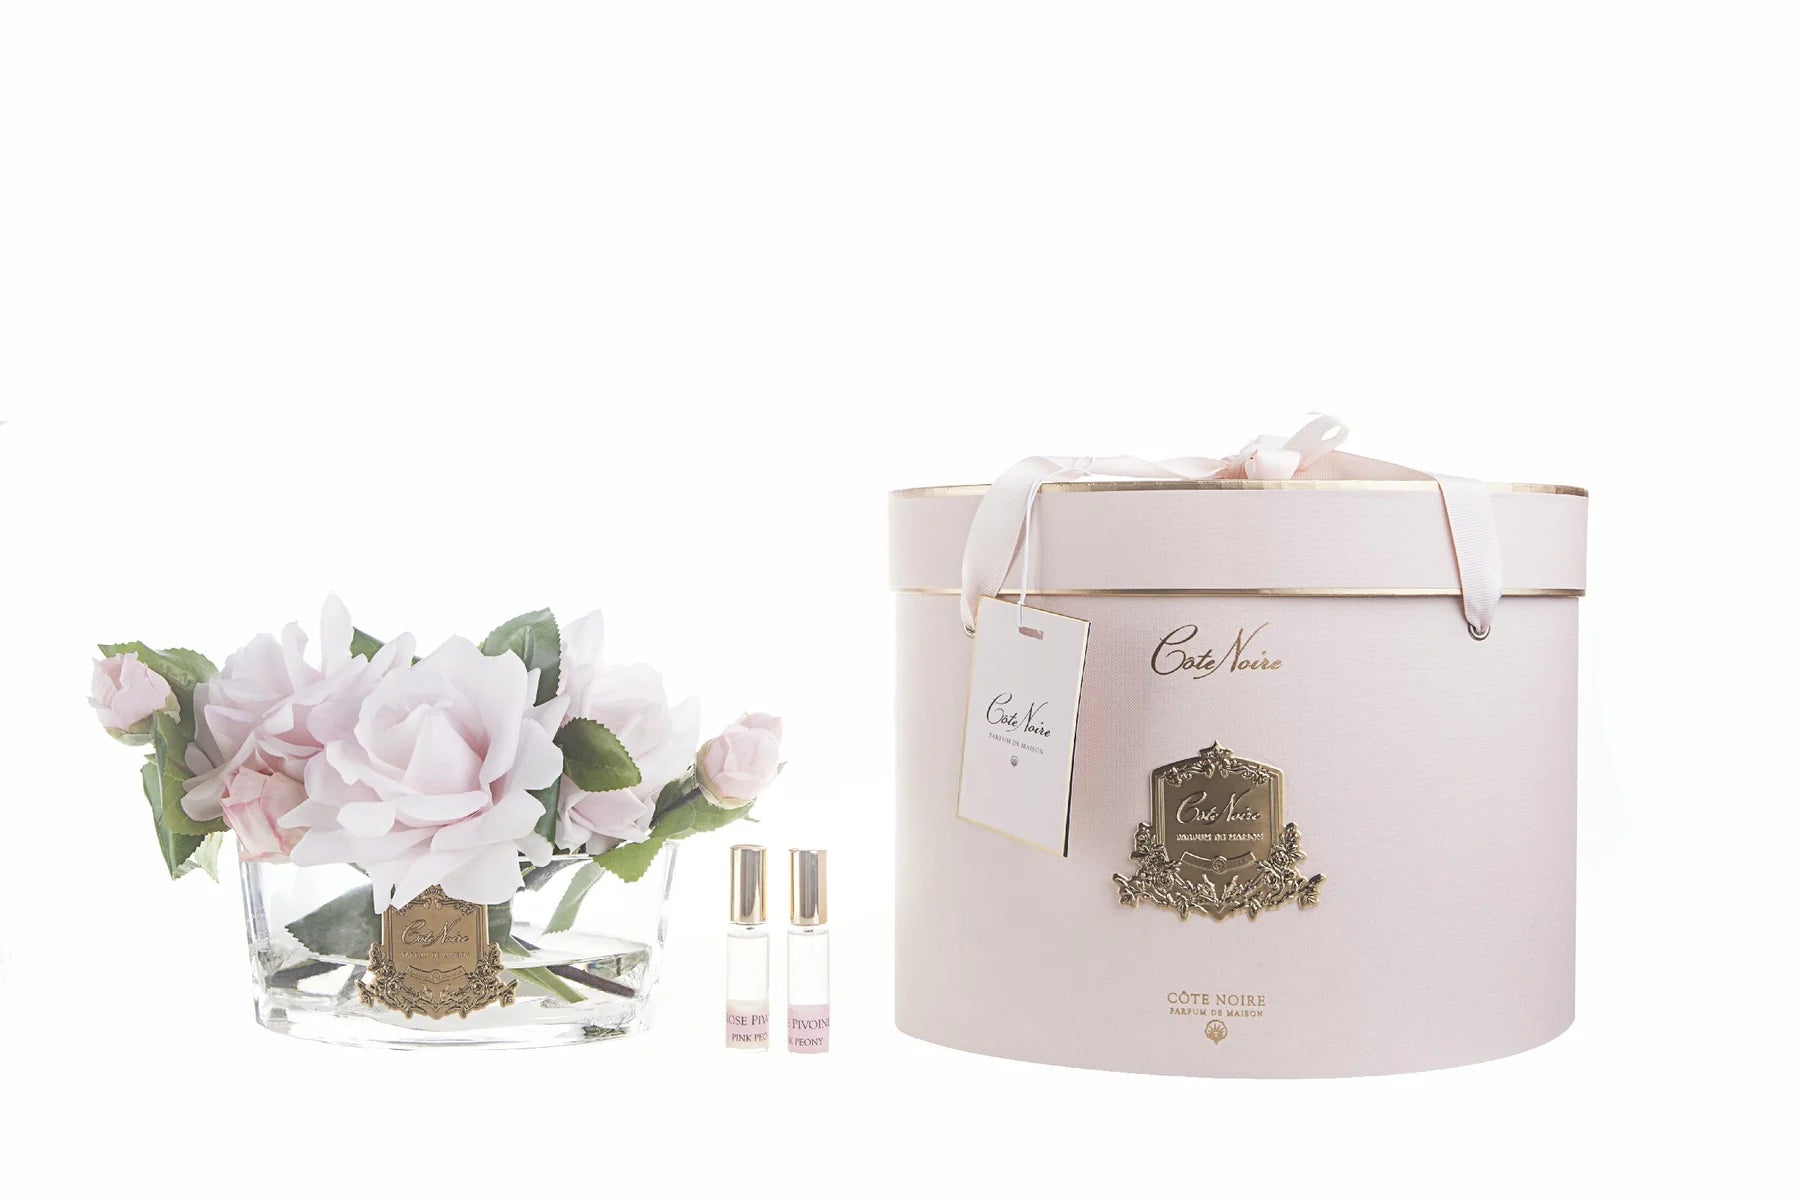 pinke rosen in hellem, ovalem glas mit goldener inschrift. daneben zwei parfumsprays und runde geschenkbox.